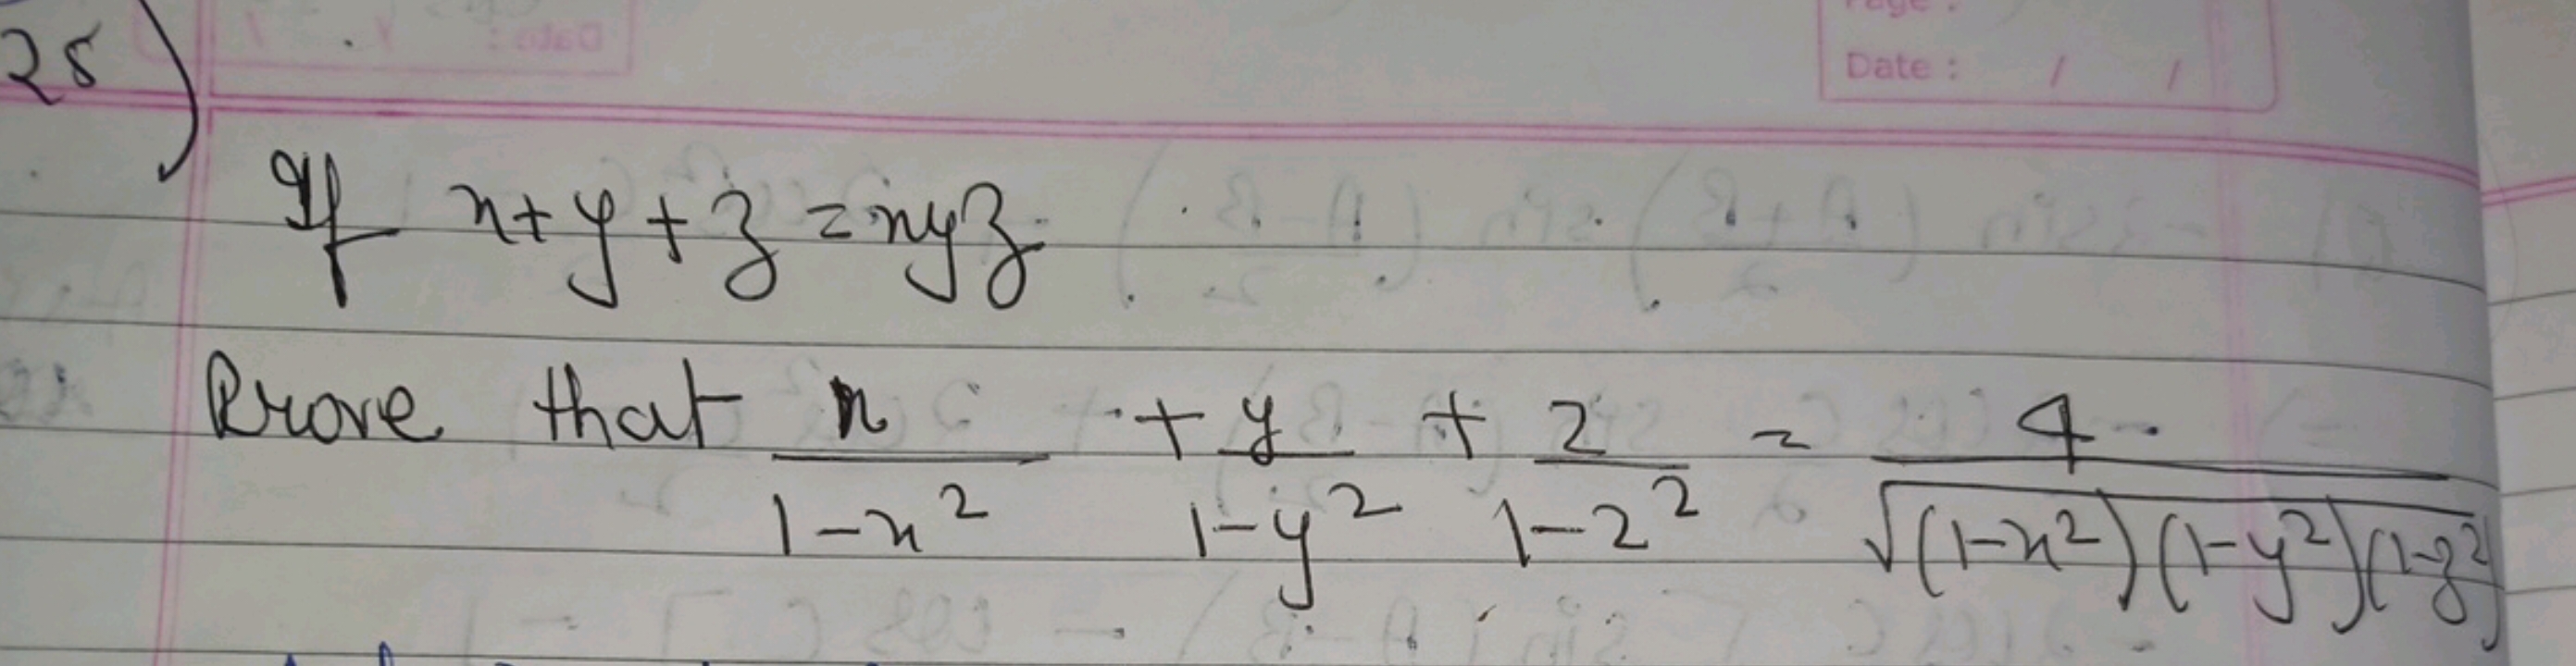  If x+y+z=xyz
Rrove that 1−x2x​+1−y2y​+1−222​=(1−x2)(1−y2)(1−y2)​4​
